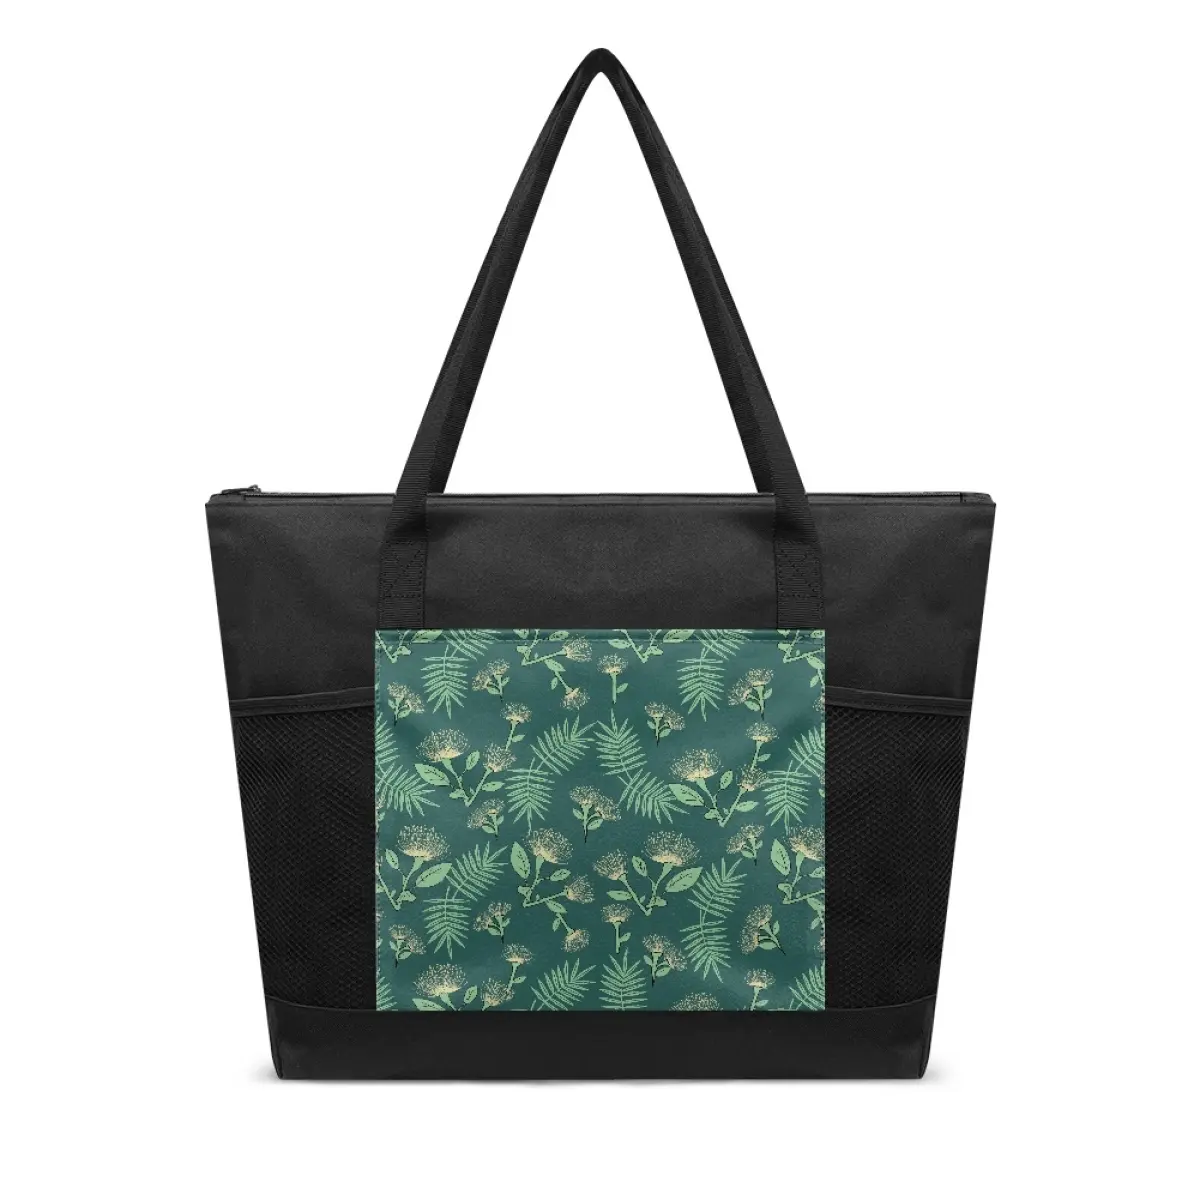 100% yeşil ve çevre dostu yeni varış renkli benzersiz tasarım tercihlerinize uygun kanvas çanta